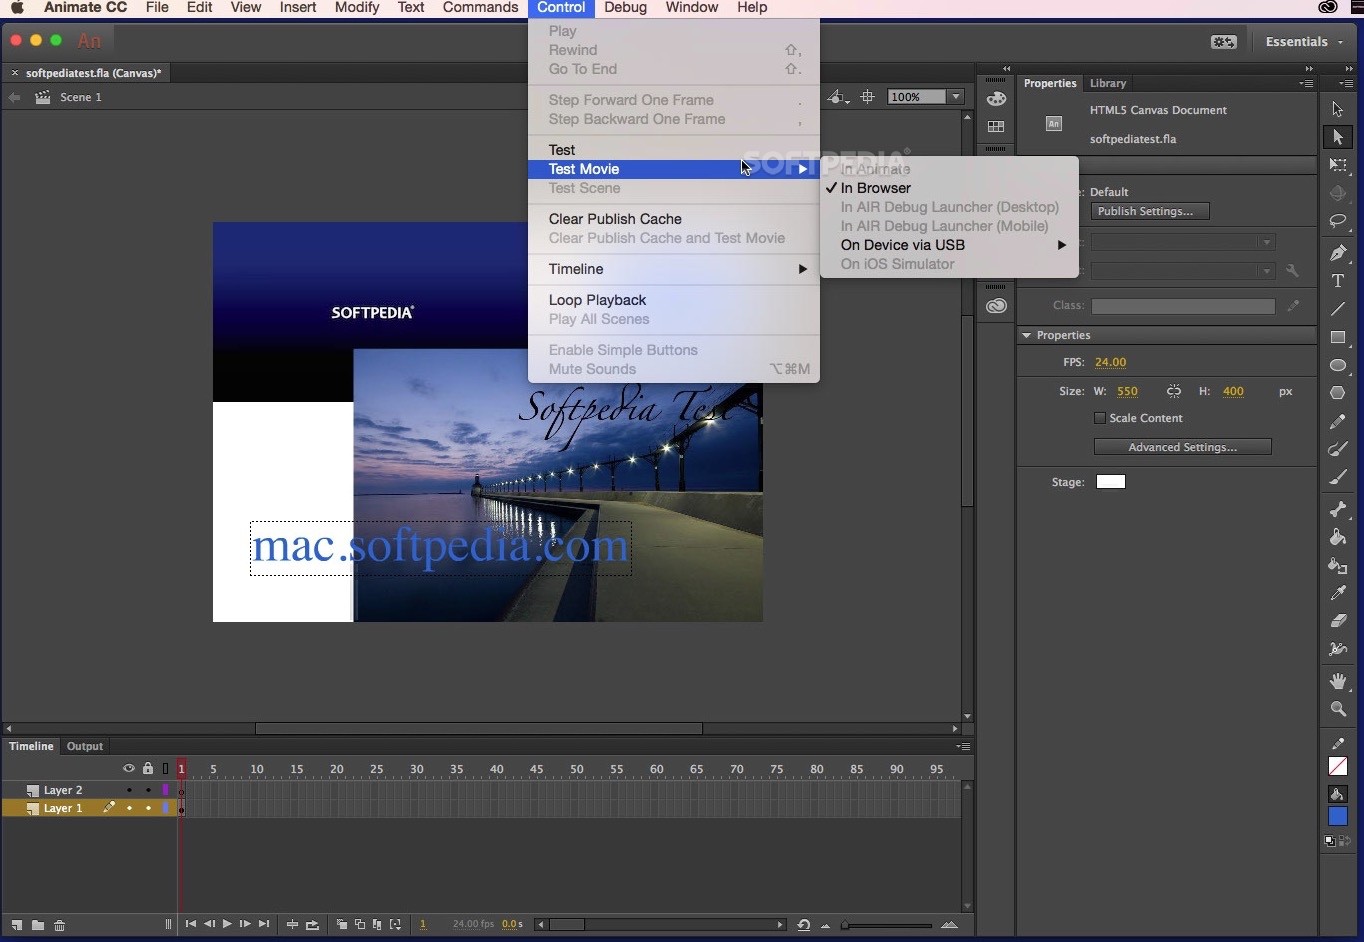 Adobe Premiere Cs6 Mac Download Free